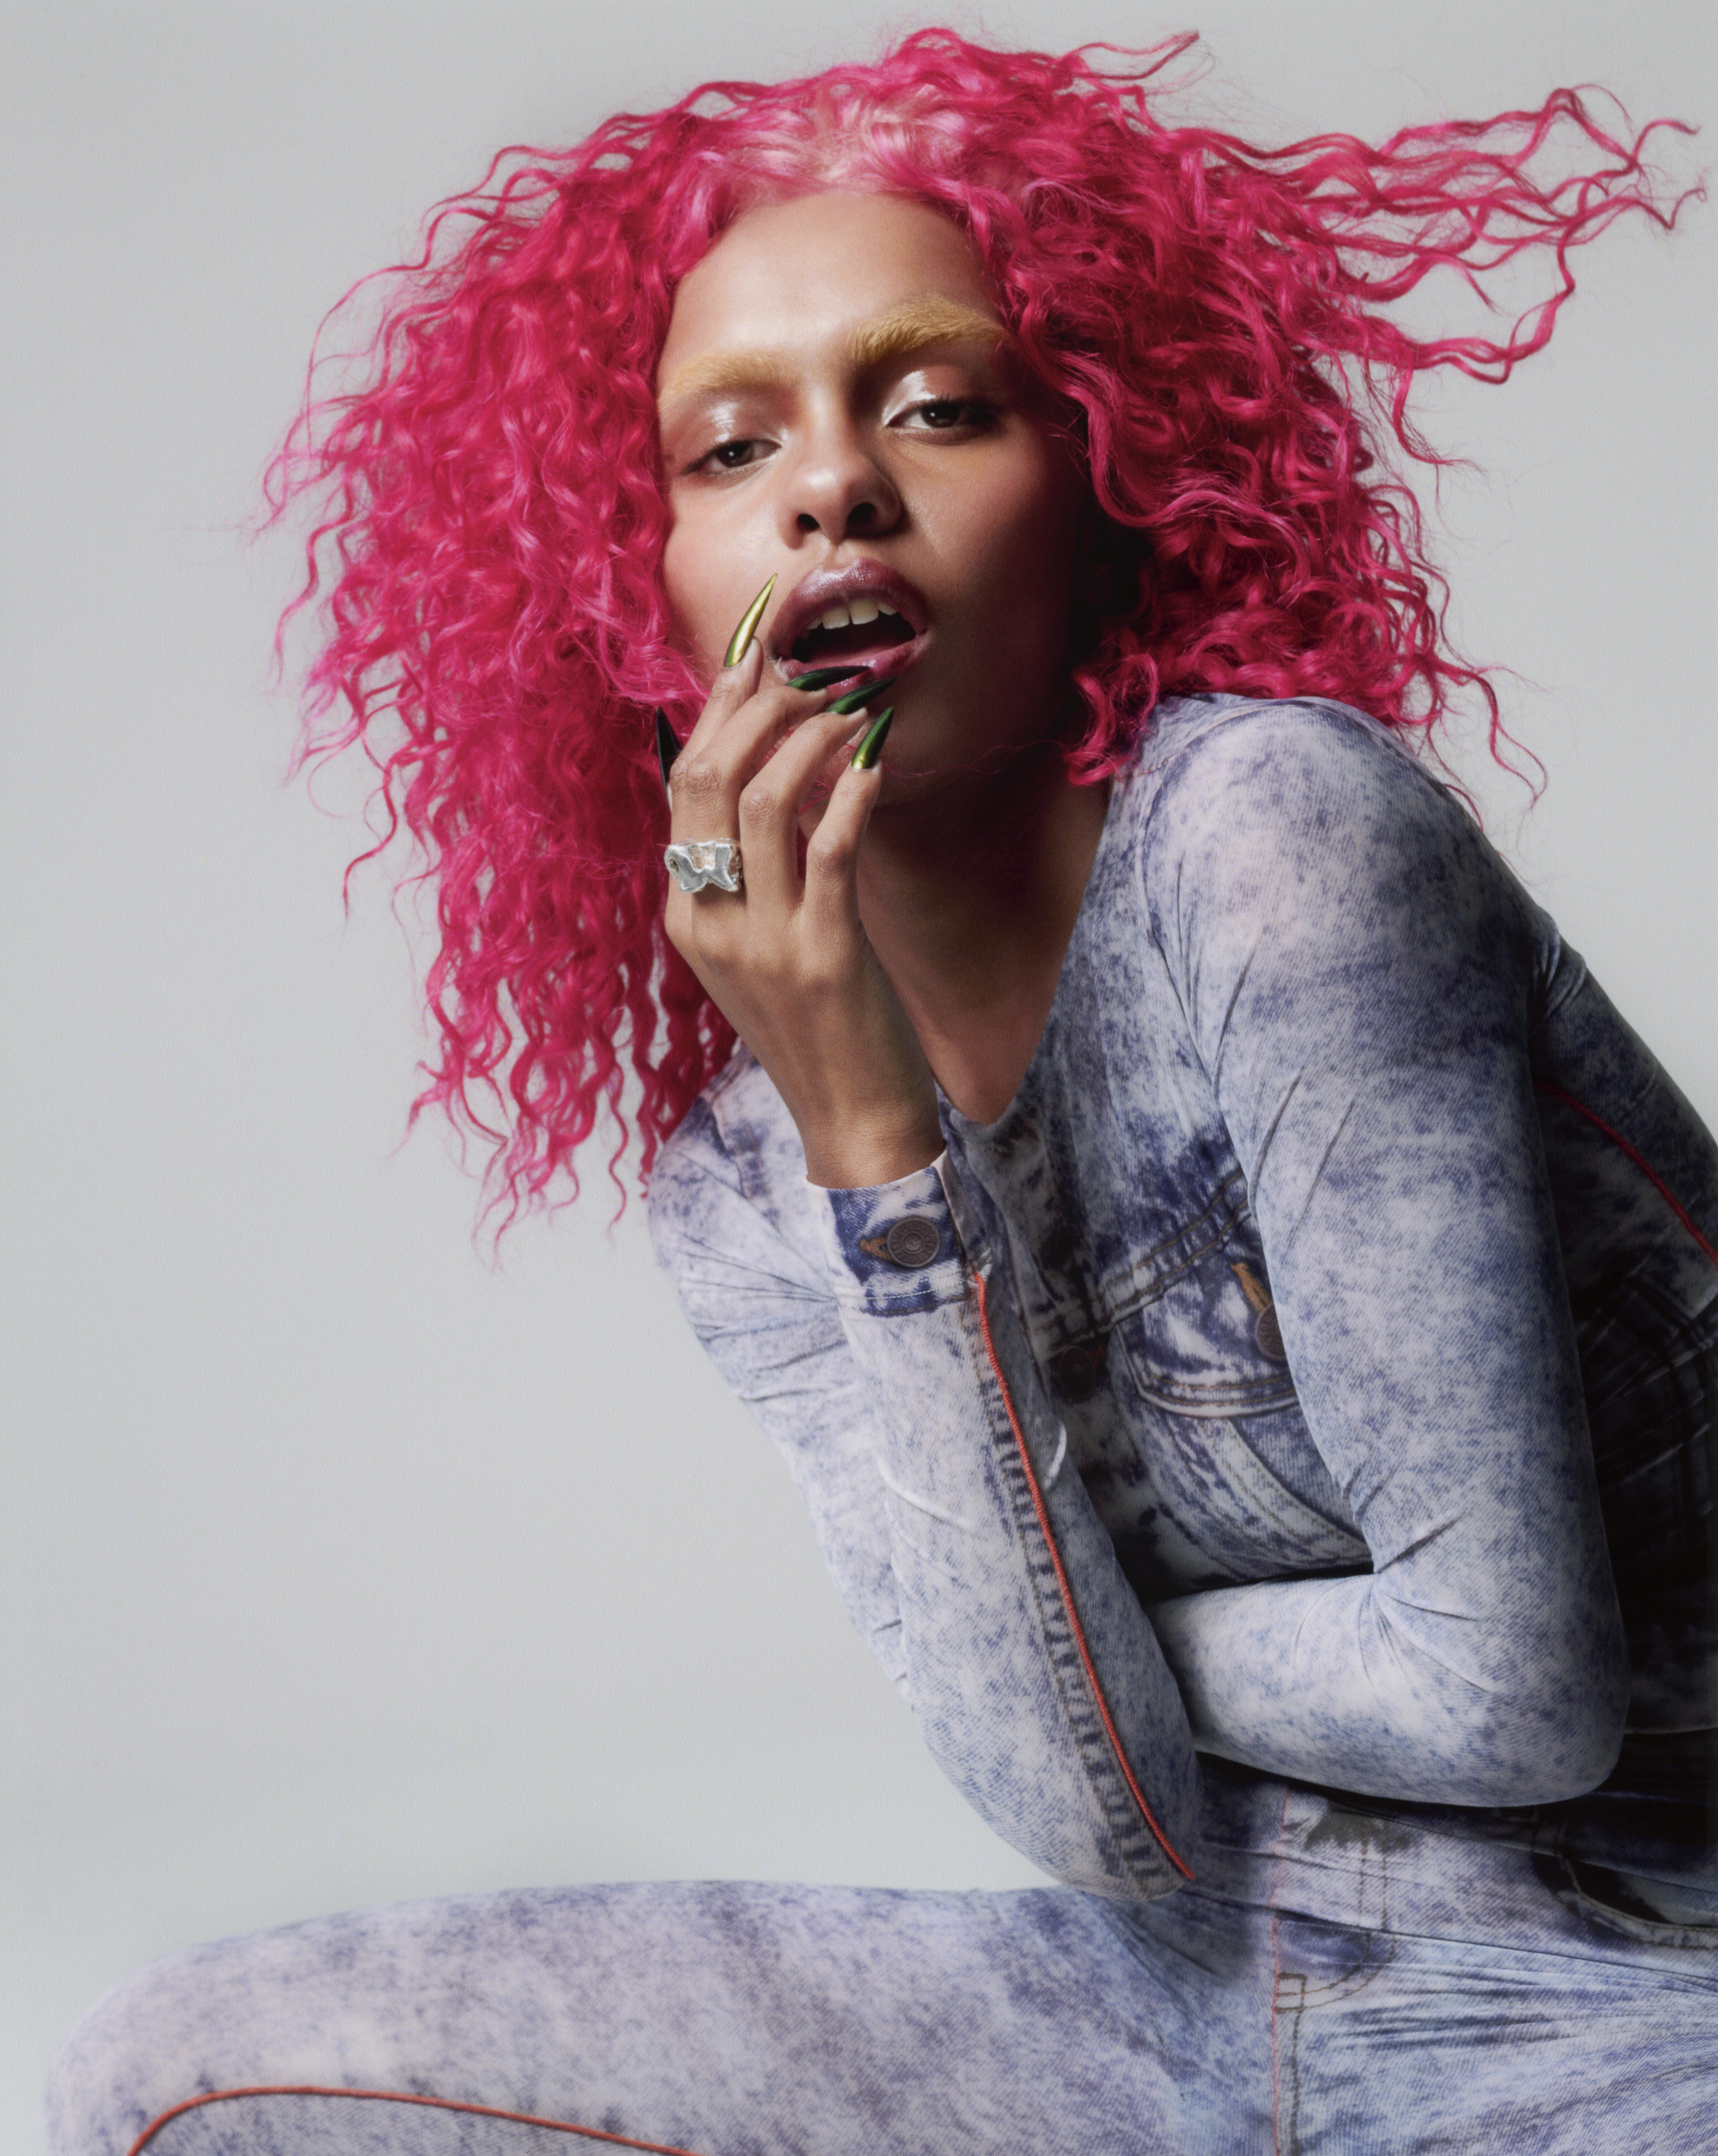 L'artiste neo soul Crystal Murray pose en perruque rose, ongles longs et pose suggestive. Un personnage assumé